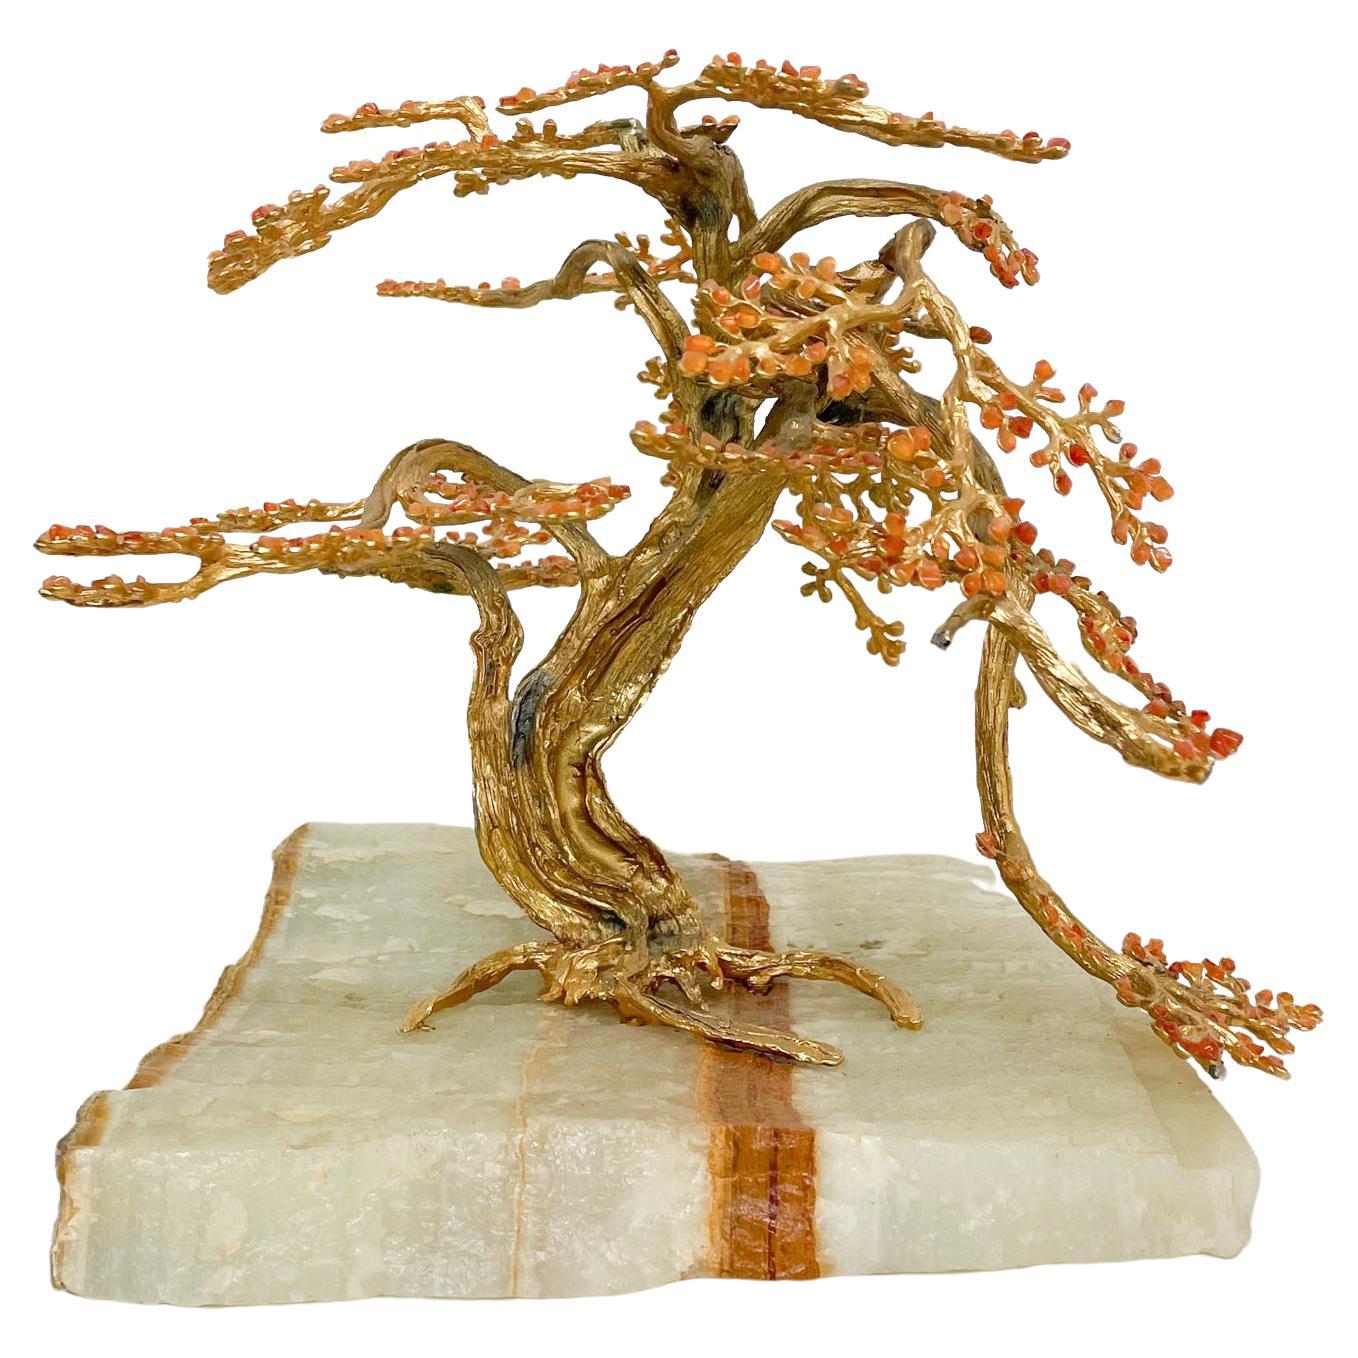 Exquisite Sculptural Modern Bonsai Tree Art in Quartzite Stone & Bronze 1970s